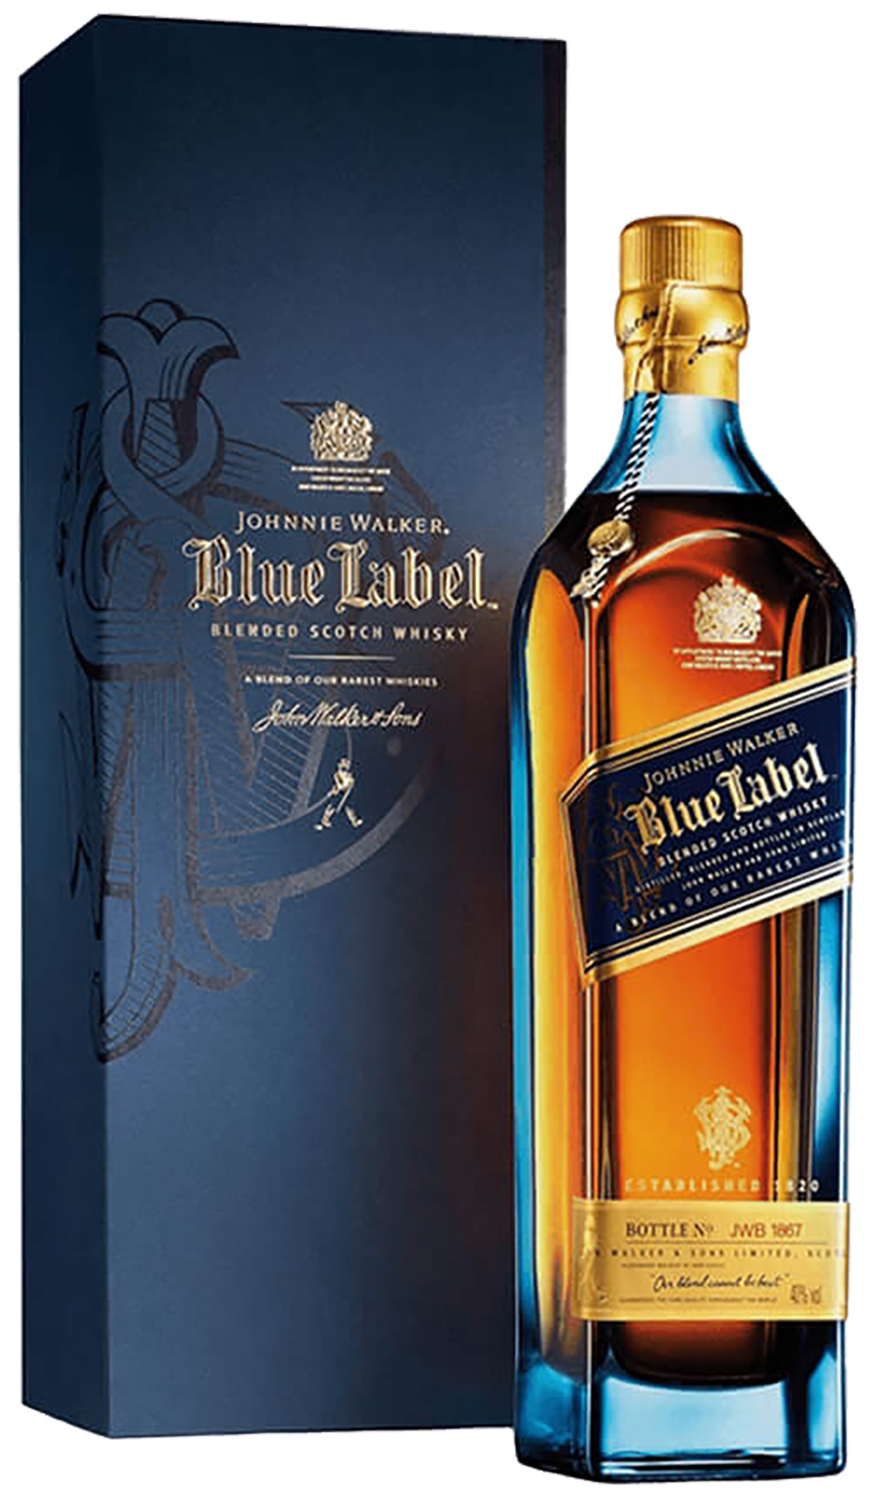 Johnnie Walker Blue Label Blended Scotch Whisky (gift box) johnnie walker black label blended scotch whisky gift box with 2 glasses